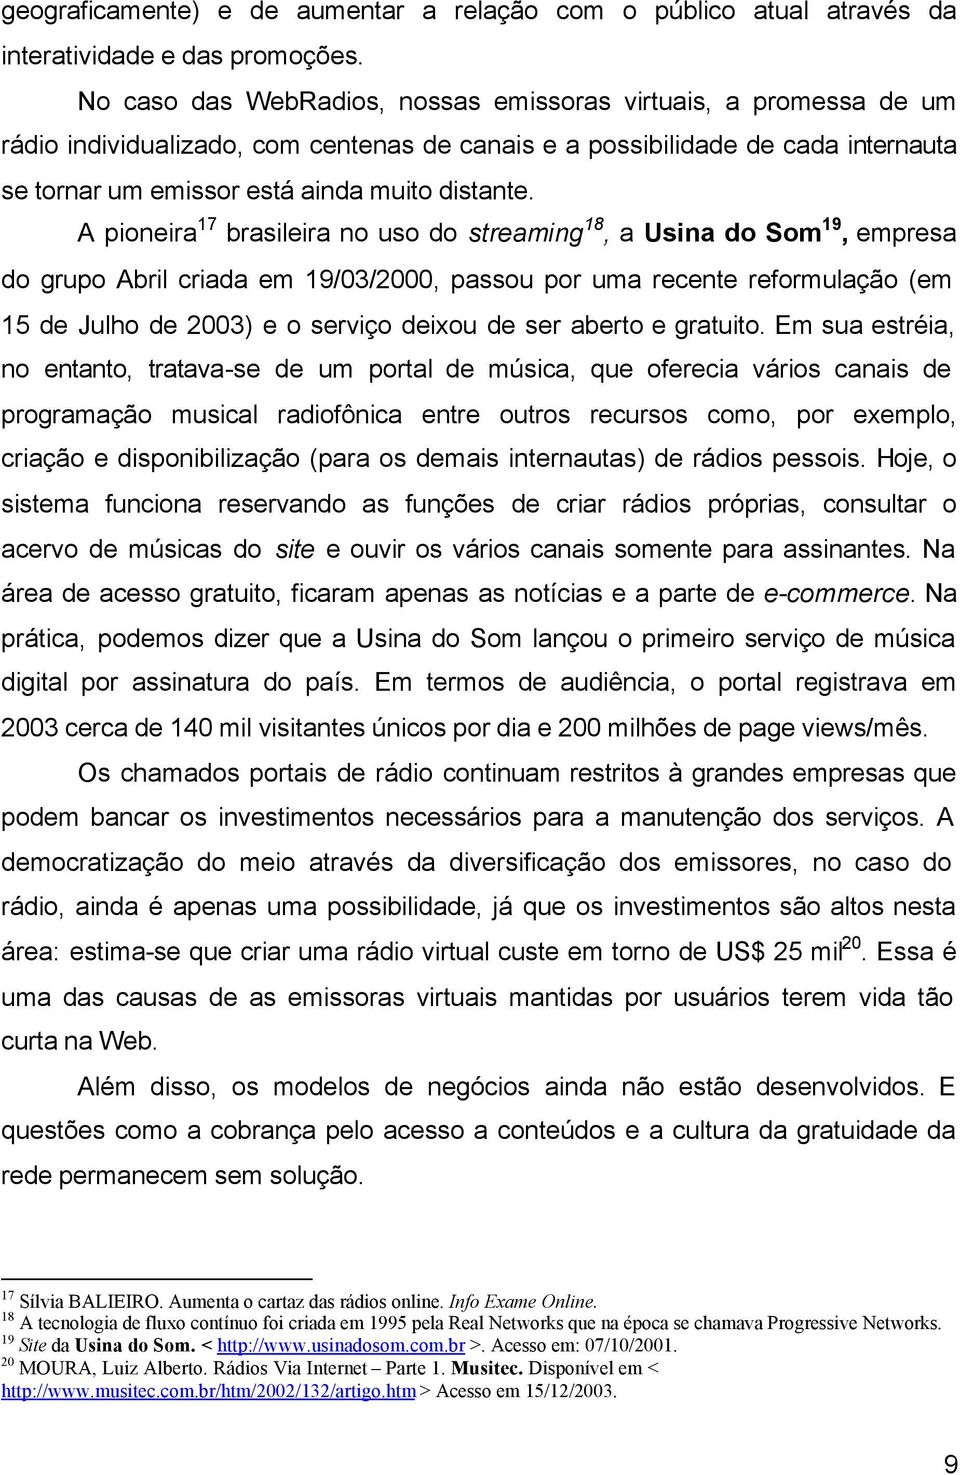 A pioneira 17 brasileira no uso do streaming 18, a Usina do Som 19, empresa do grupo Abril criada em 19/03/2000, passou por uma recente reformulação (em 15 de Julho de 2003) e o serviço deixou de ser